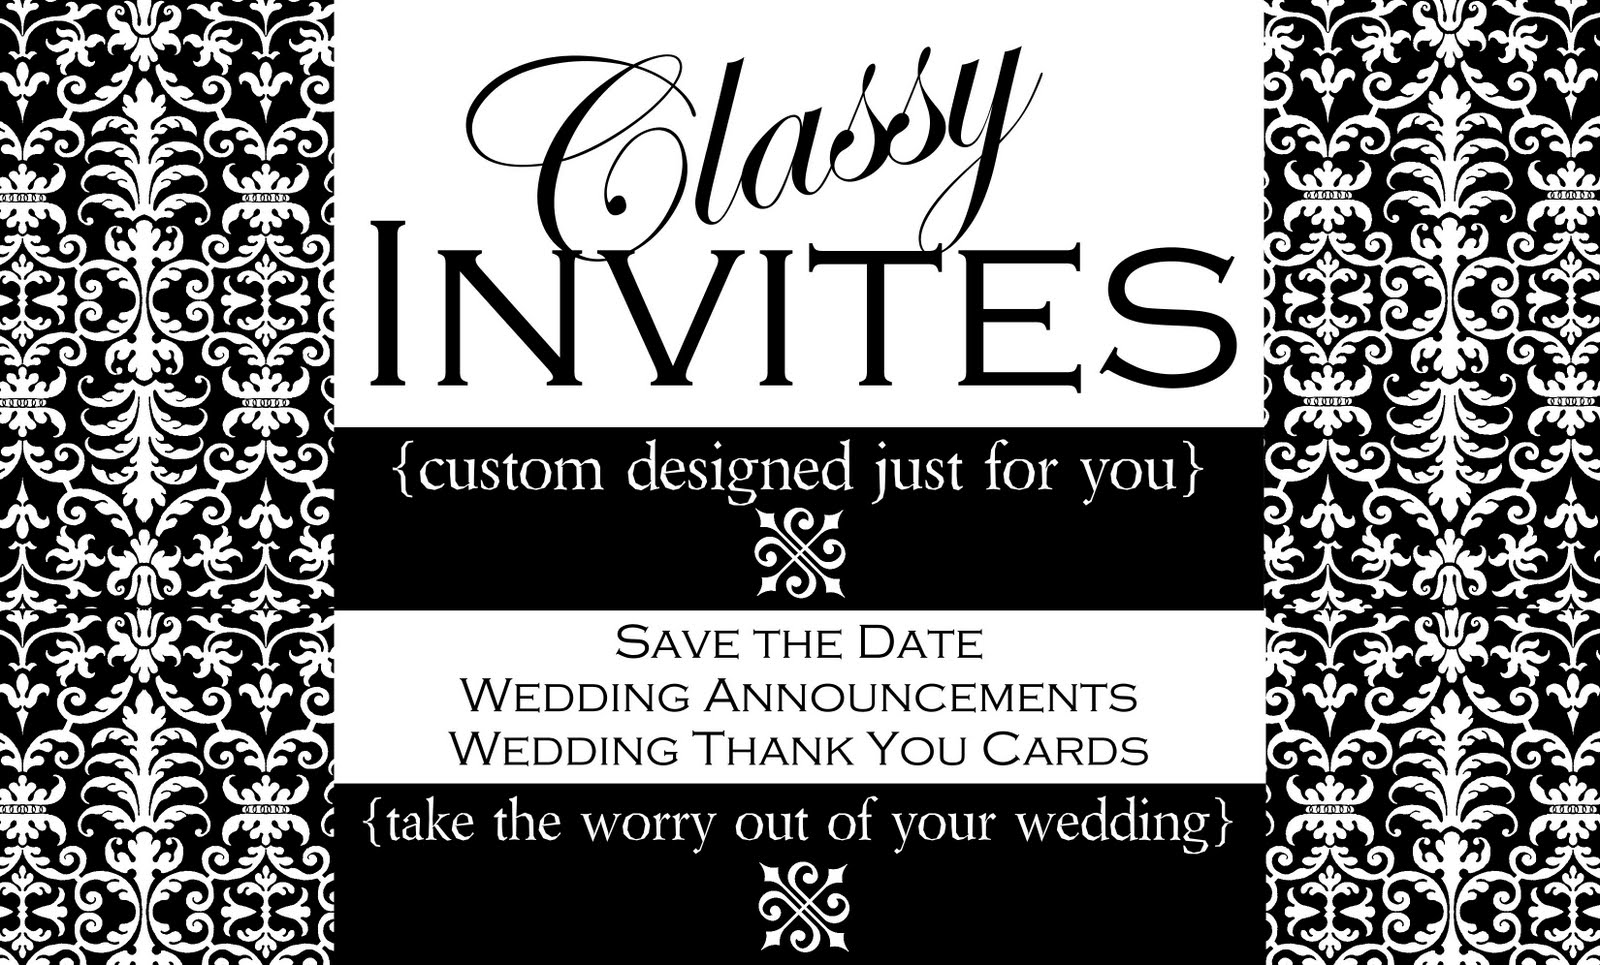 Classy Invites